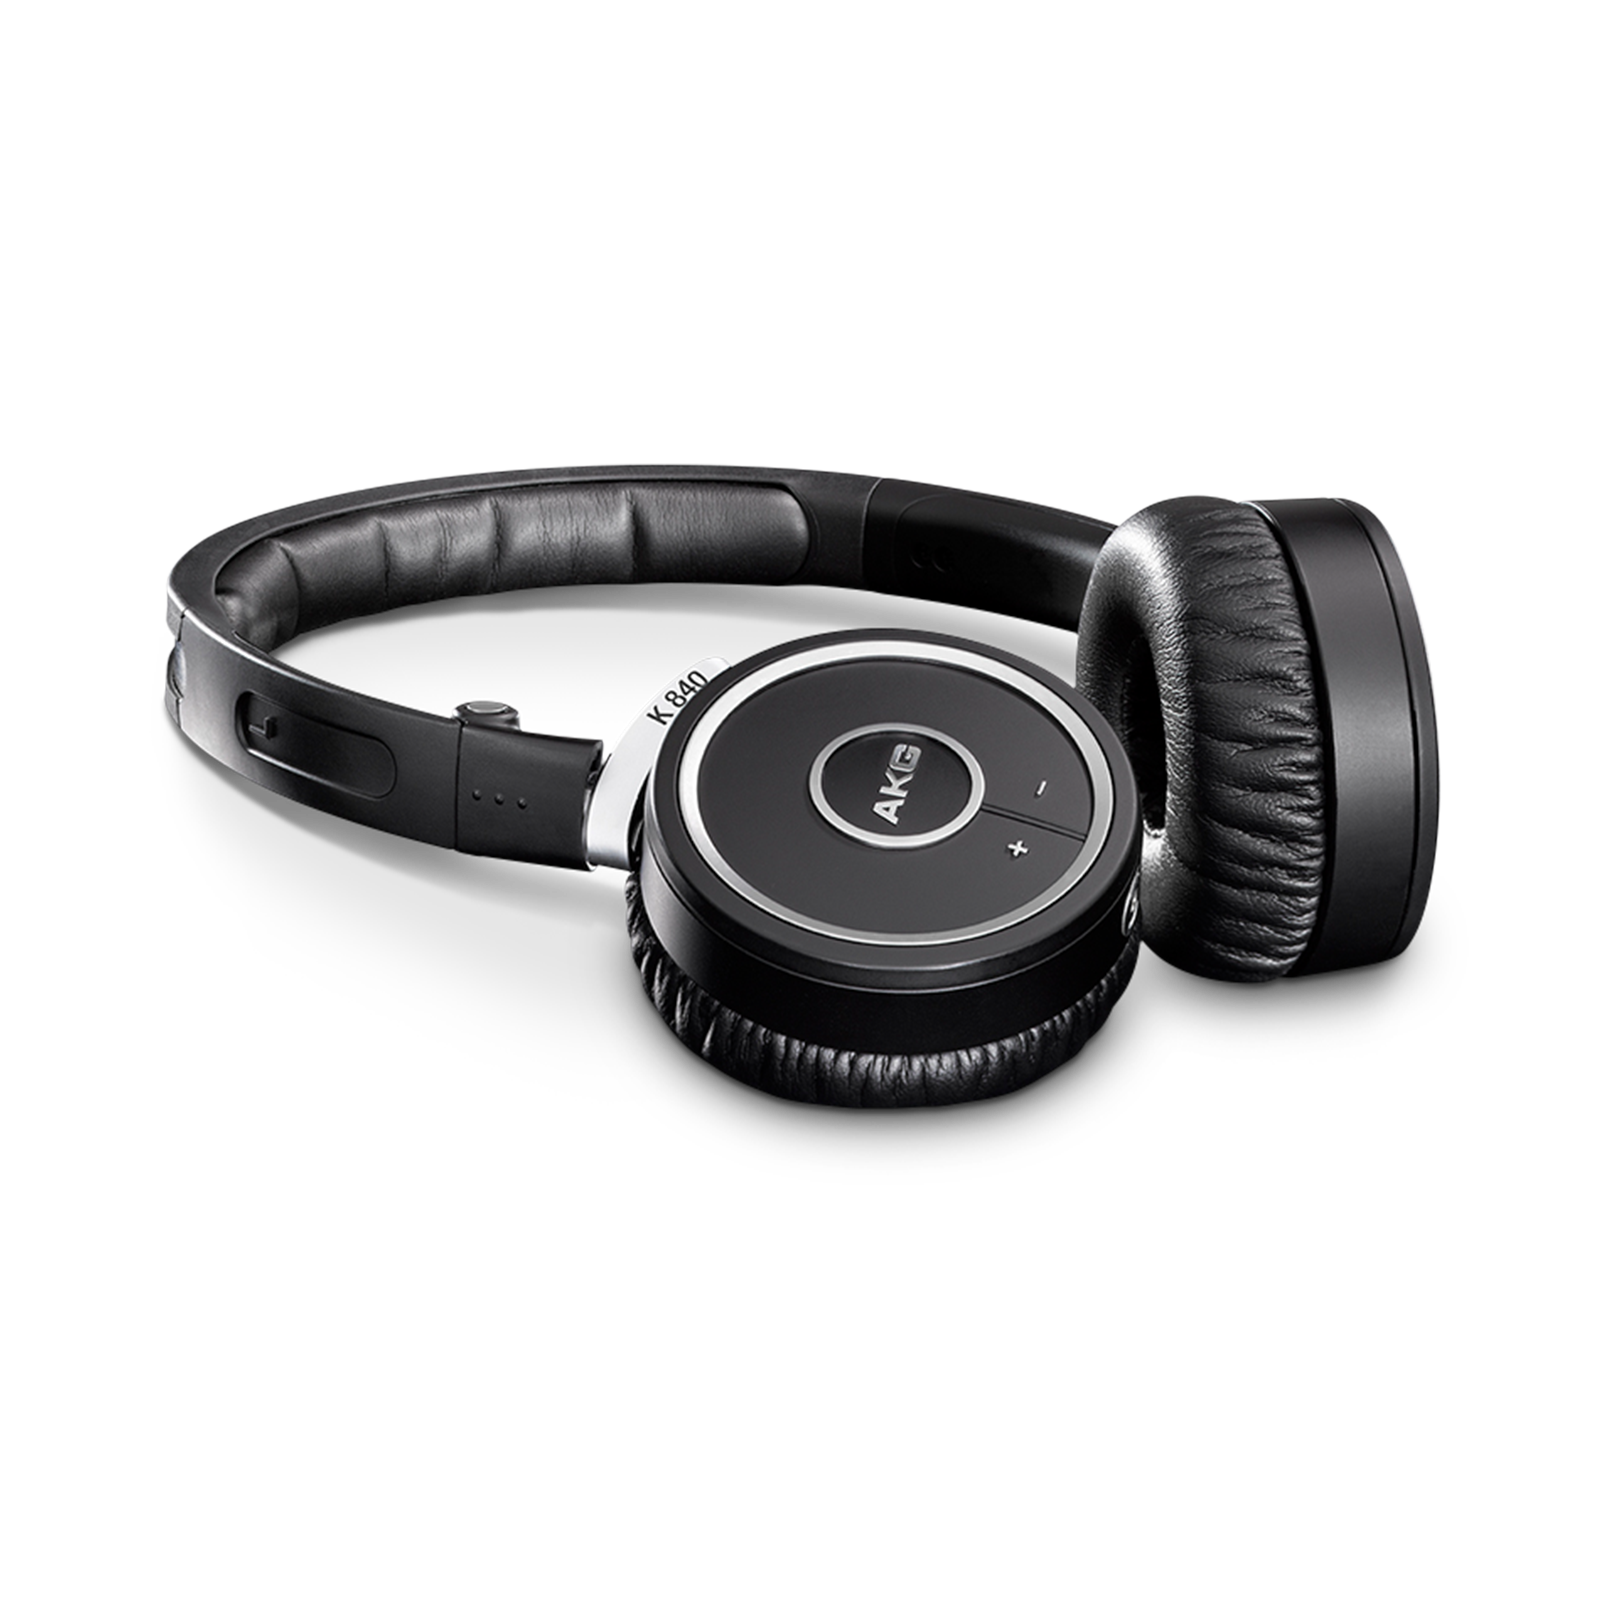 K840KL - Black - Wireless on-ear headphones - Detailshot 1